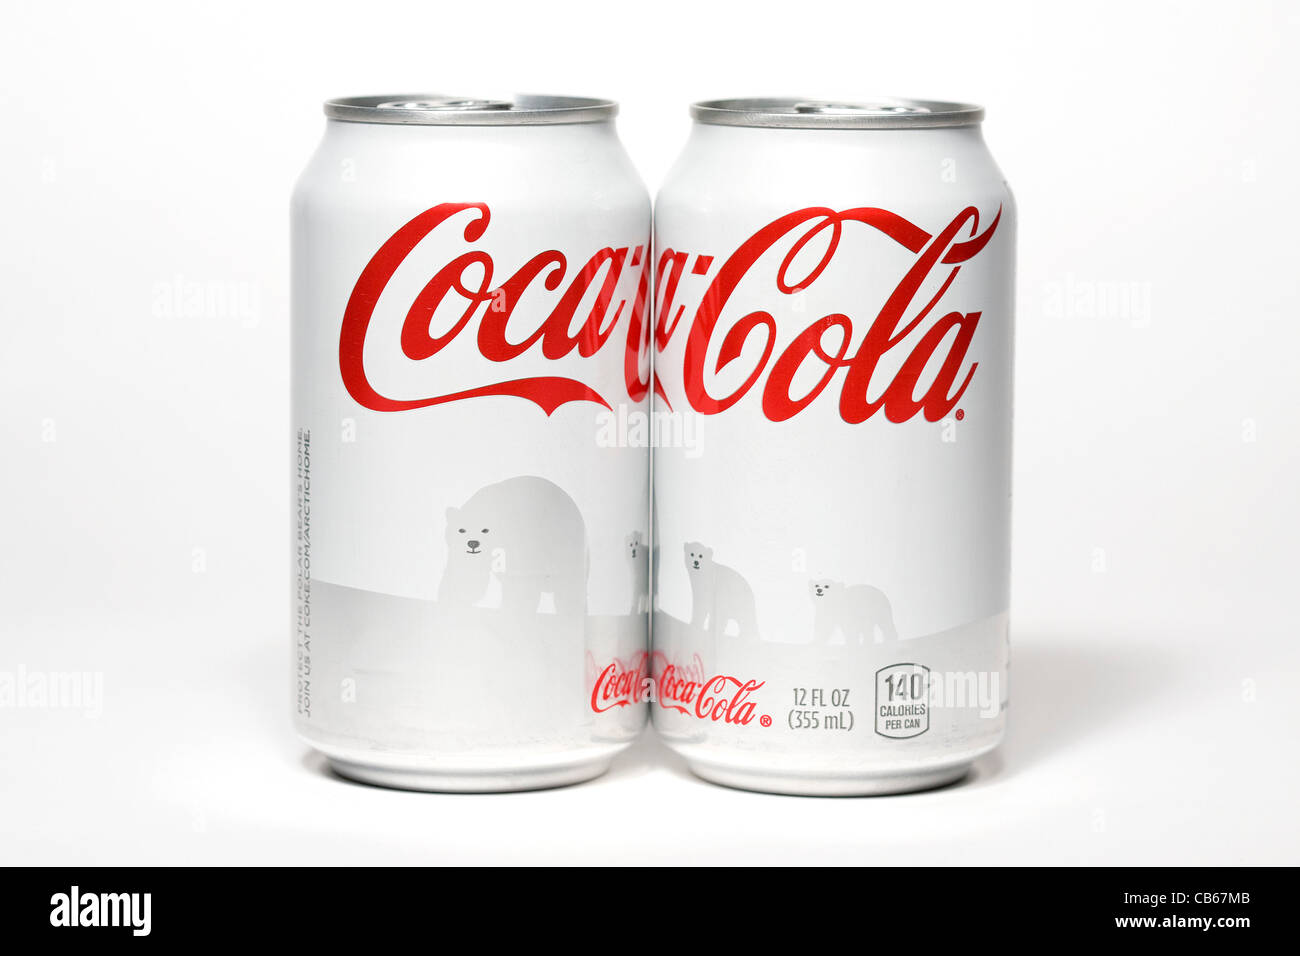 The Coca-Cola polar bear can.  Stock Photo